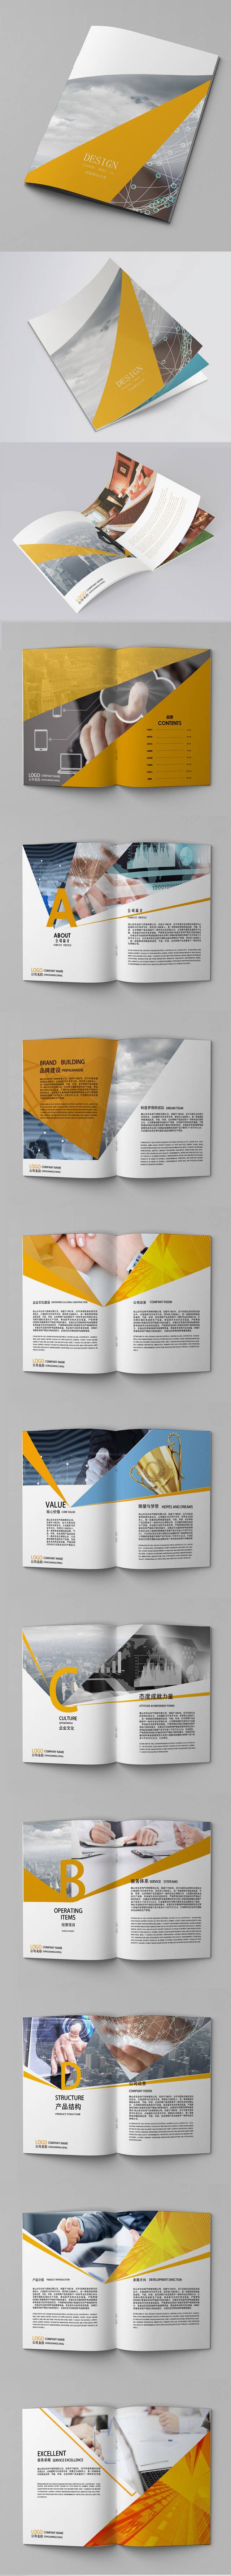 企业宣传册画册设计